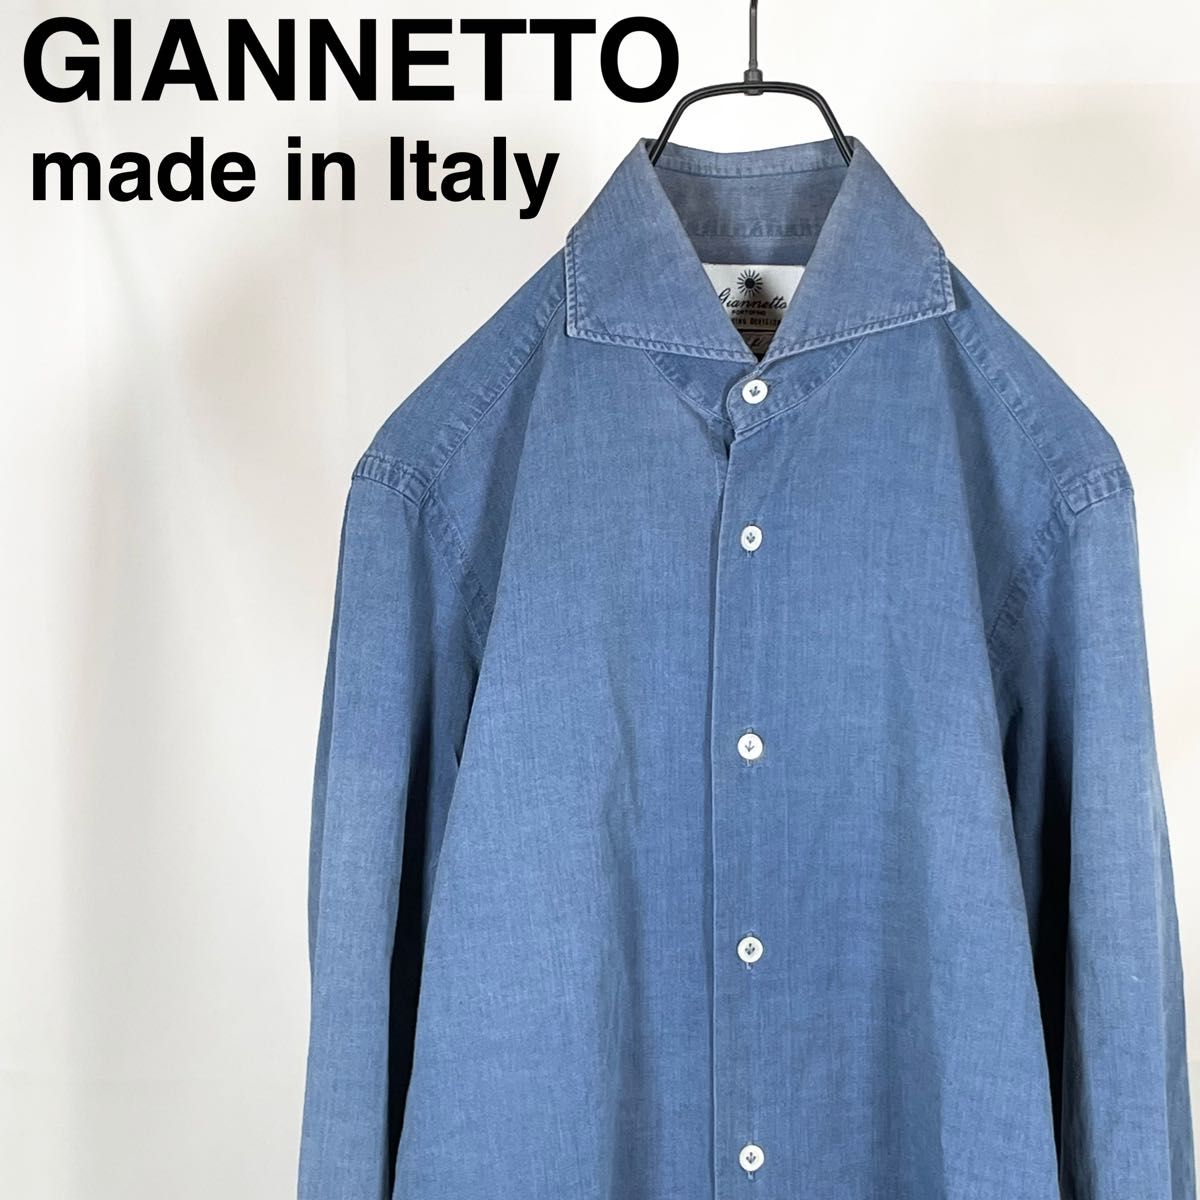 ジャンネット(GIANNETTO) シャンブレー メンズ ブランド シャツ ホリゾンタルカラー イタリア製 コットン綿 インディゴ